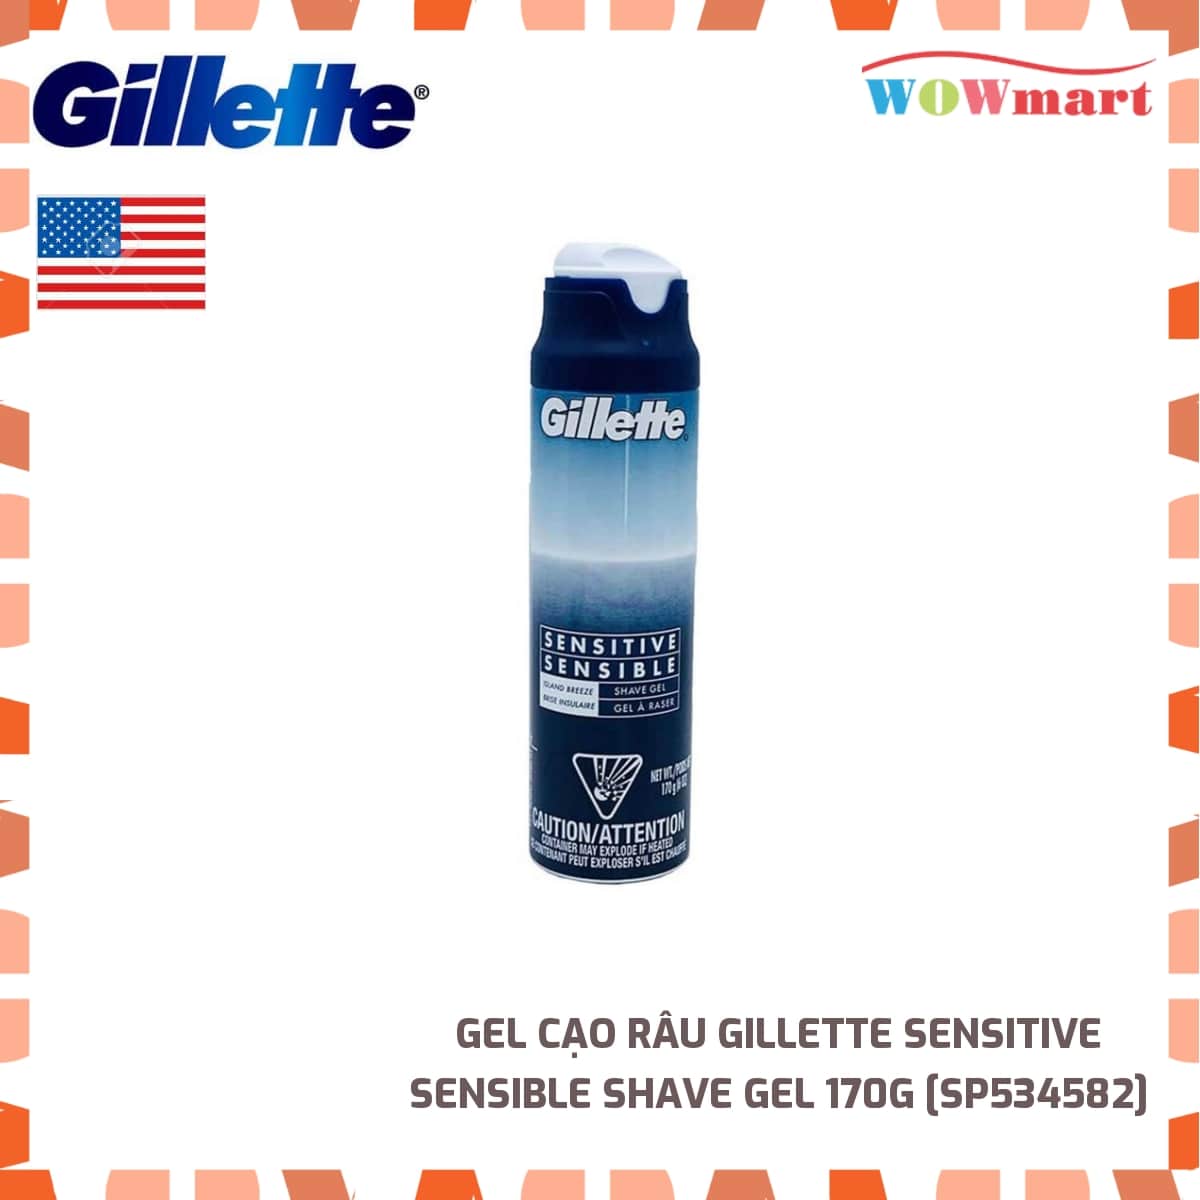 Gel cạo râu Gillette Sensitive Sensible Shave Gel 170g